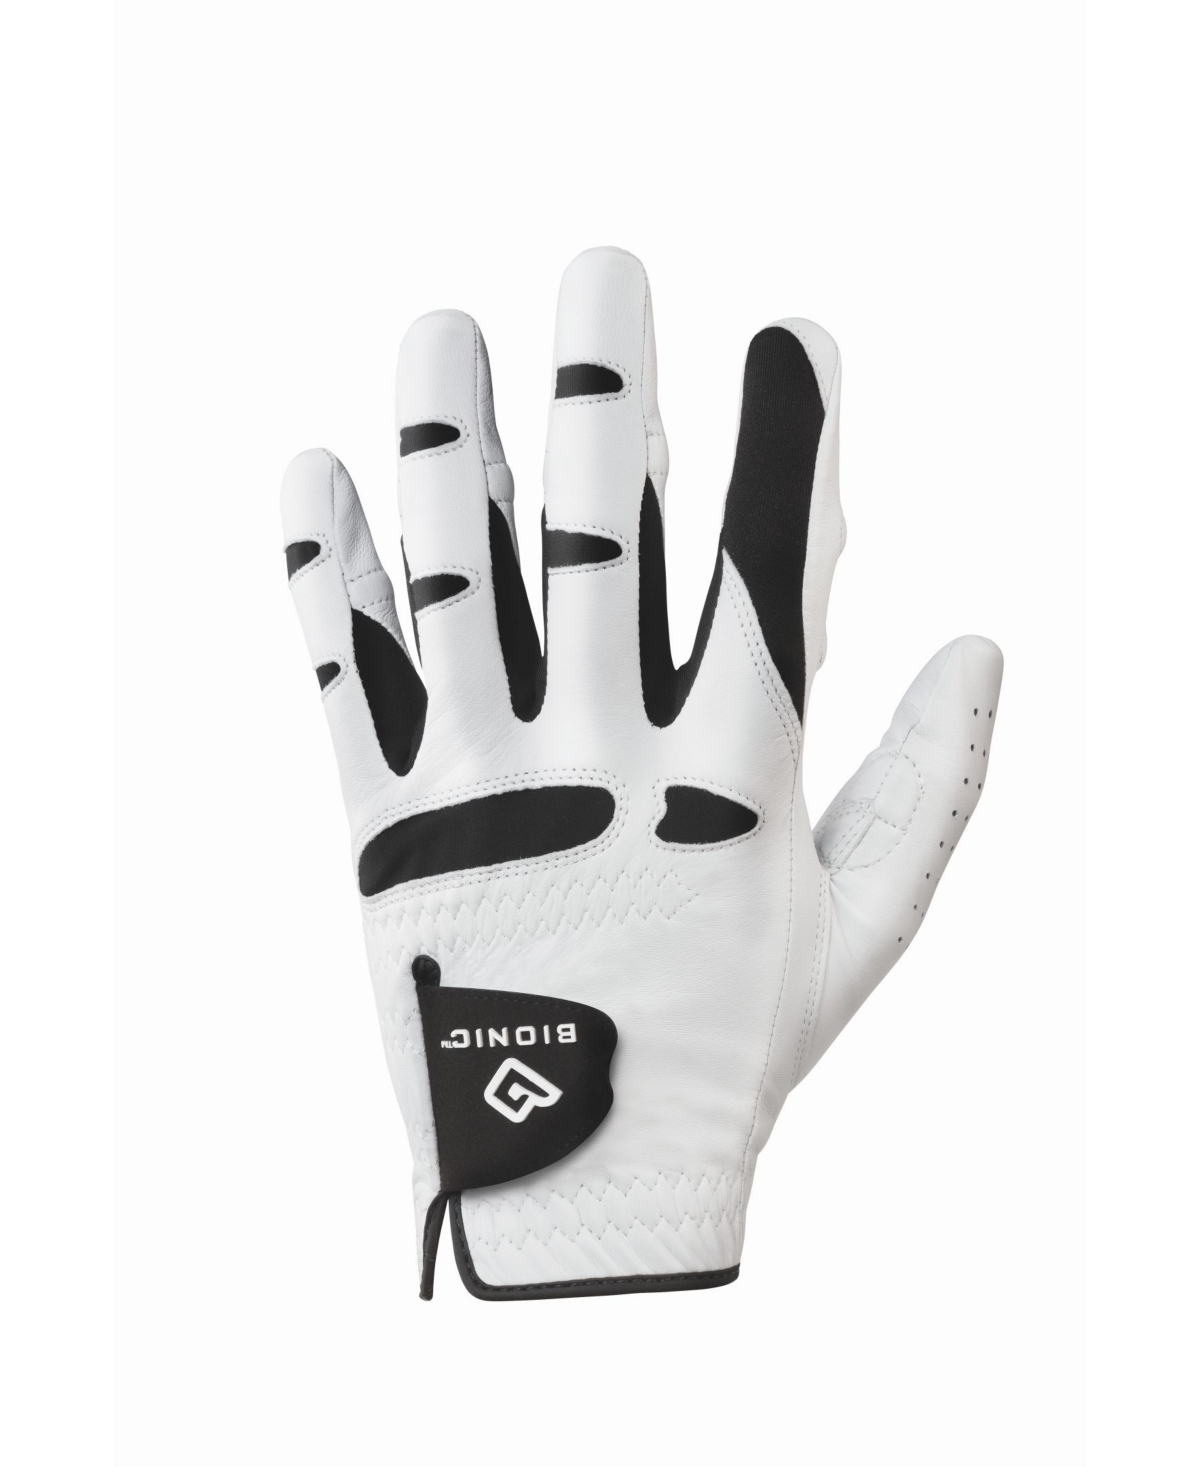 Save 42% on Bionic Gloves Men's Natural Fit Golf Left Glove